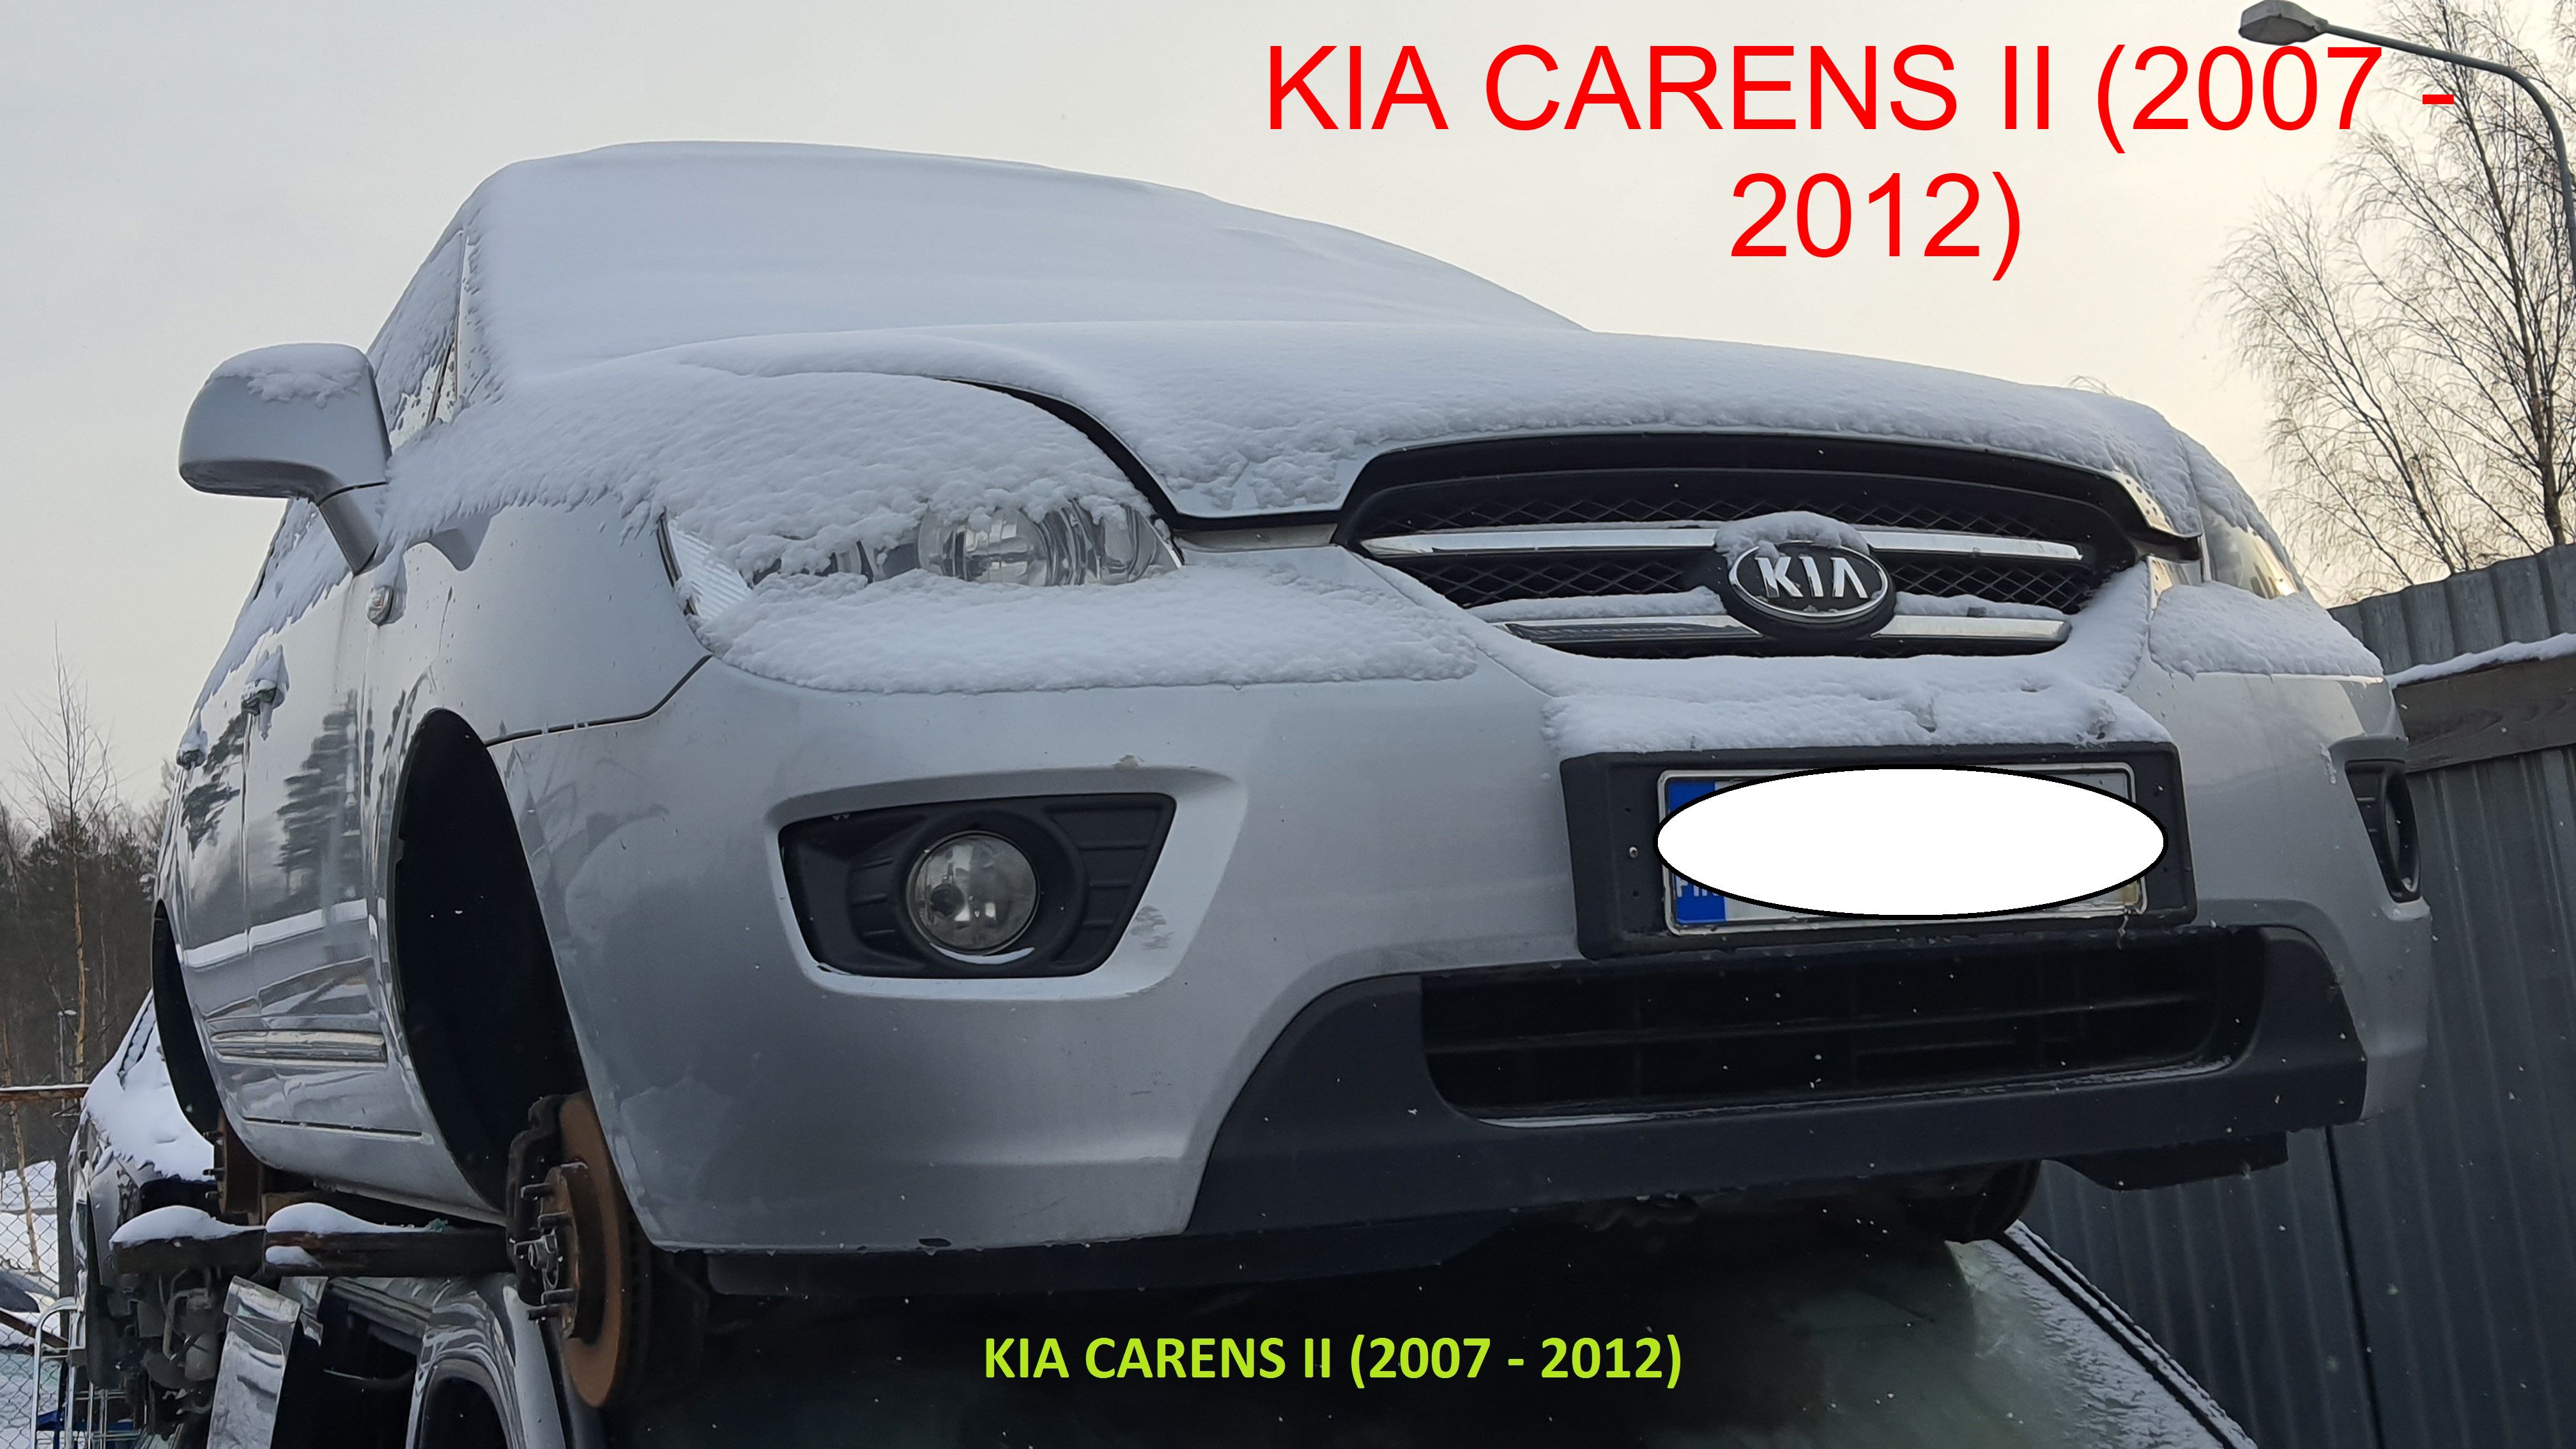 KIA CARENS II (2007 - 2012)